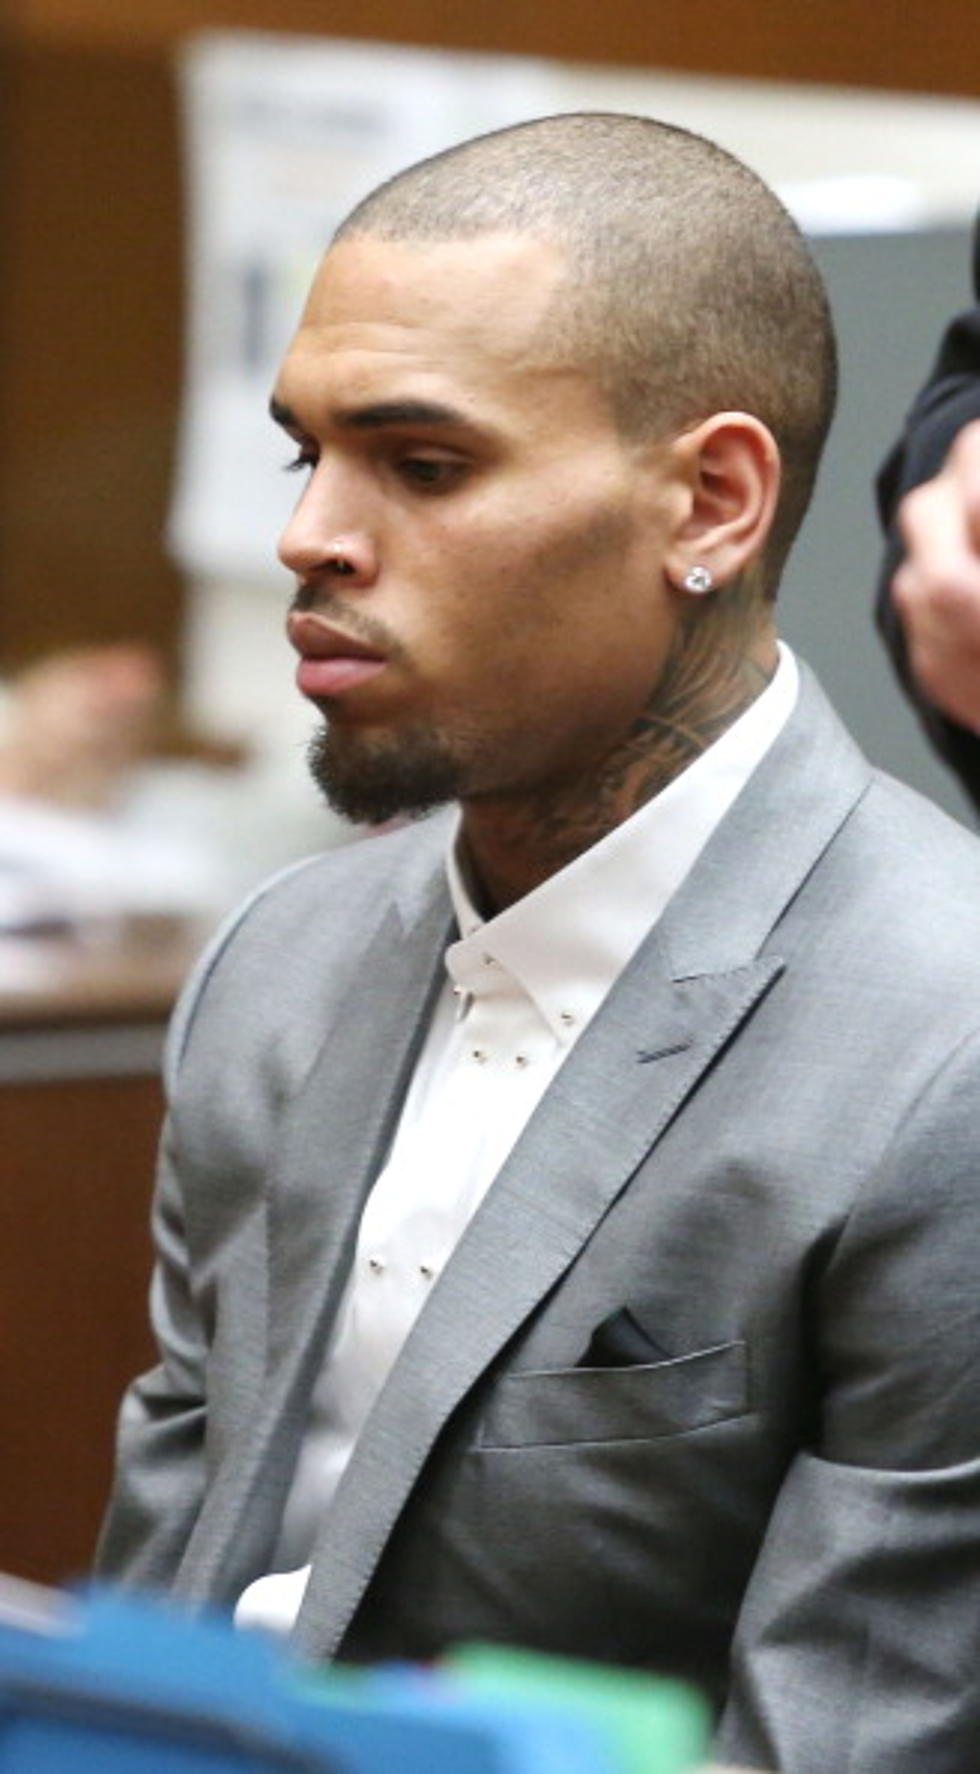 Chris Brown Blamed for Shootings